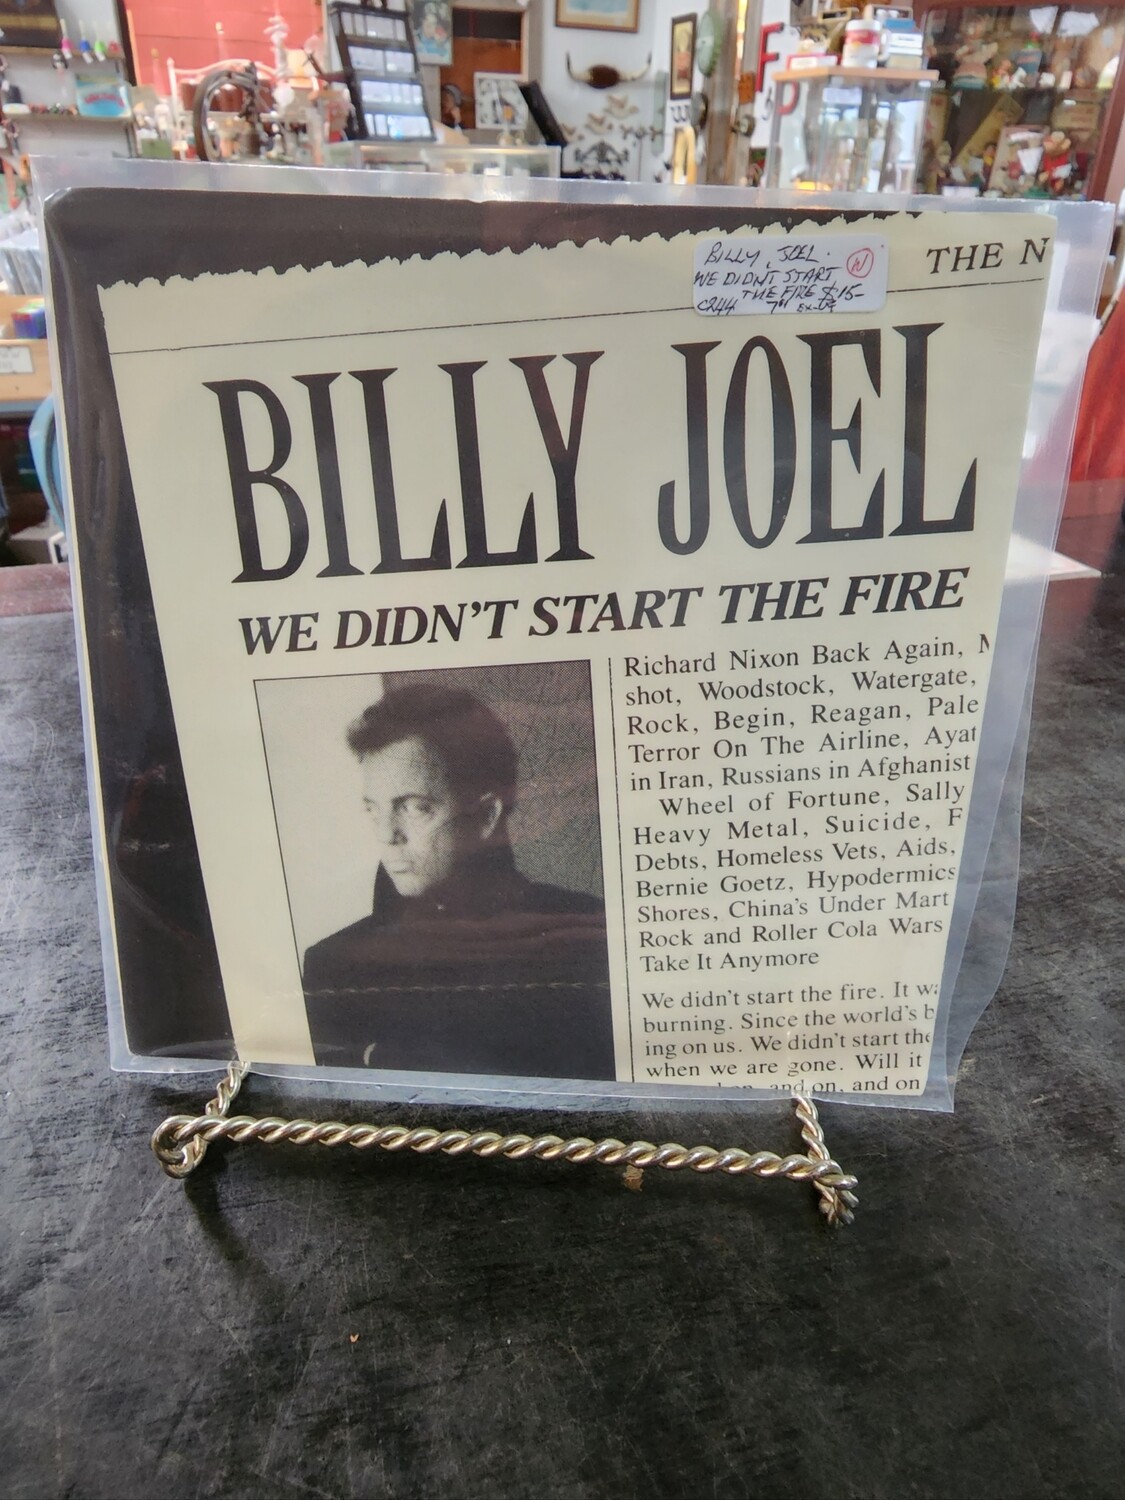 BILLY JOEL WE DIDN'T START THE FIRE 7"SINGLE